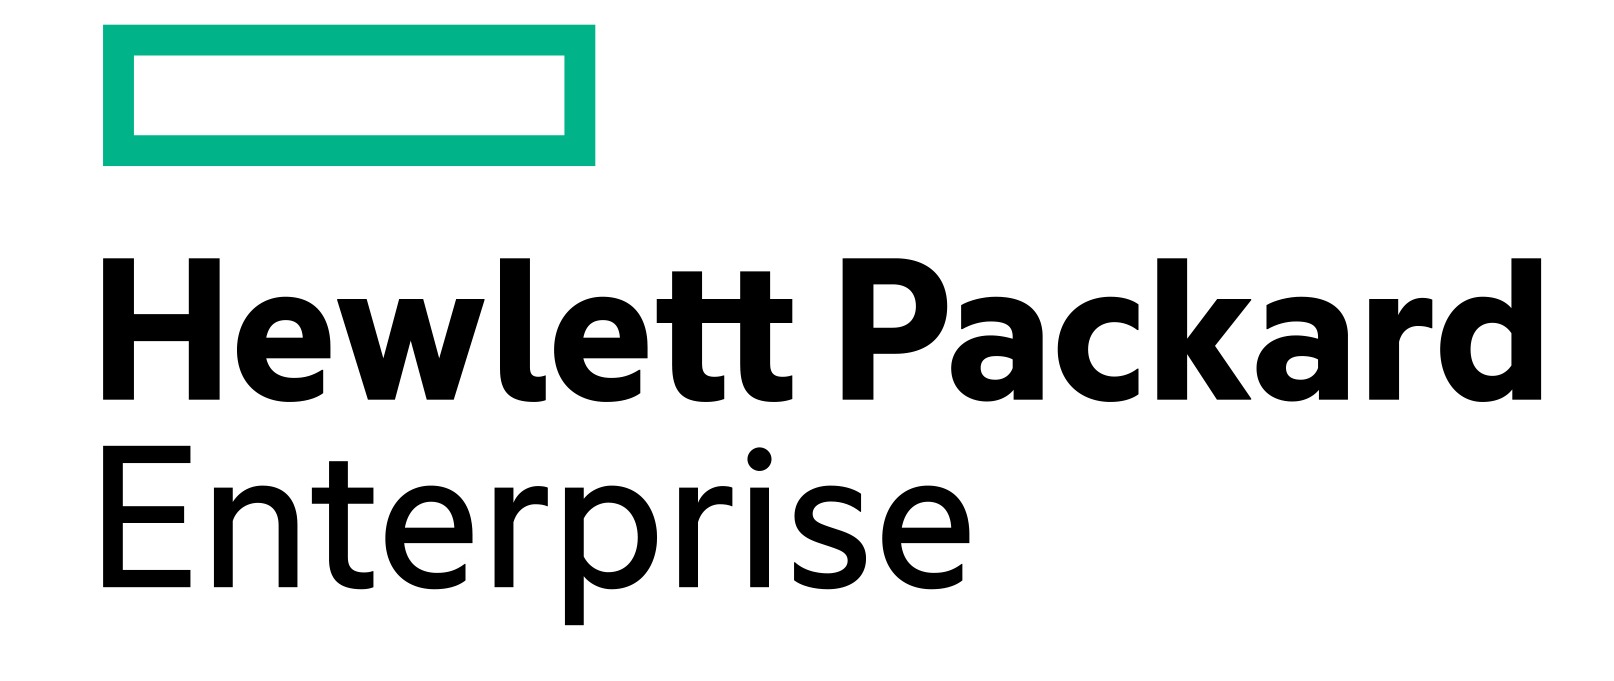 HP Enterprise logo